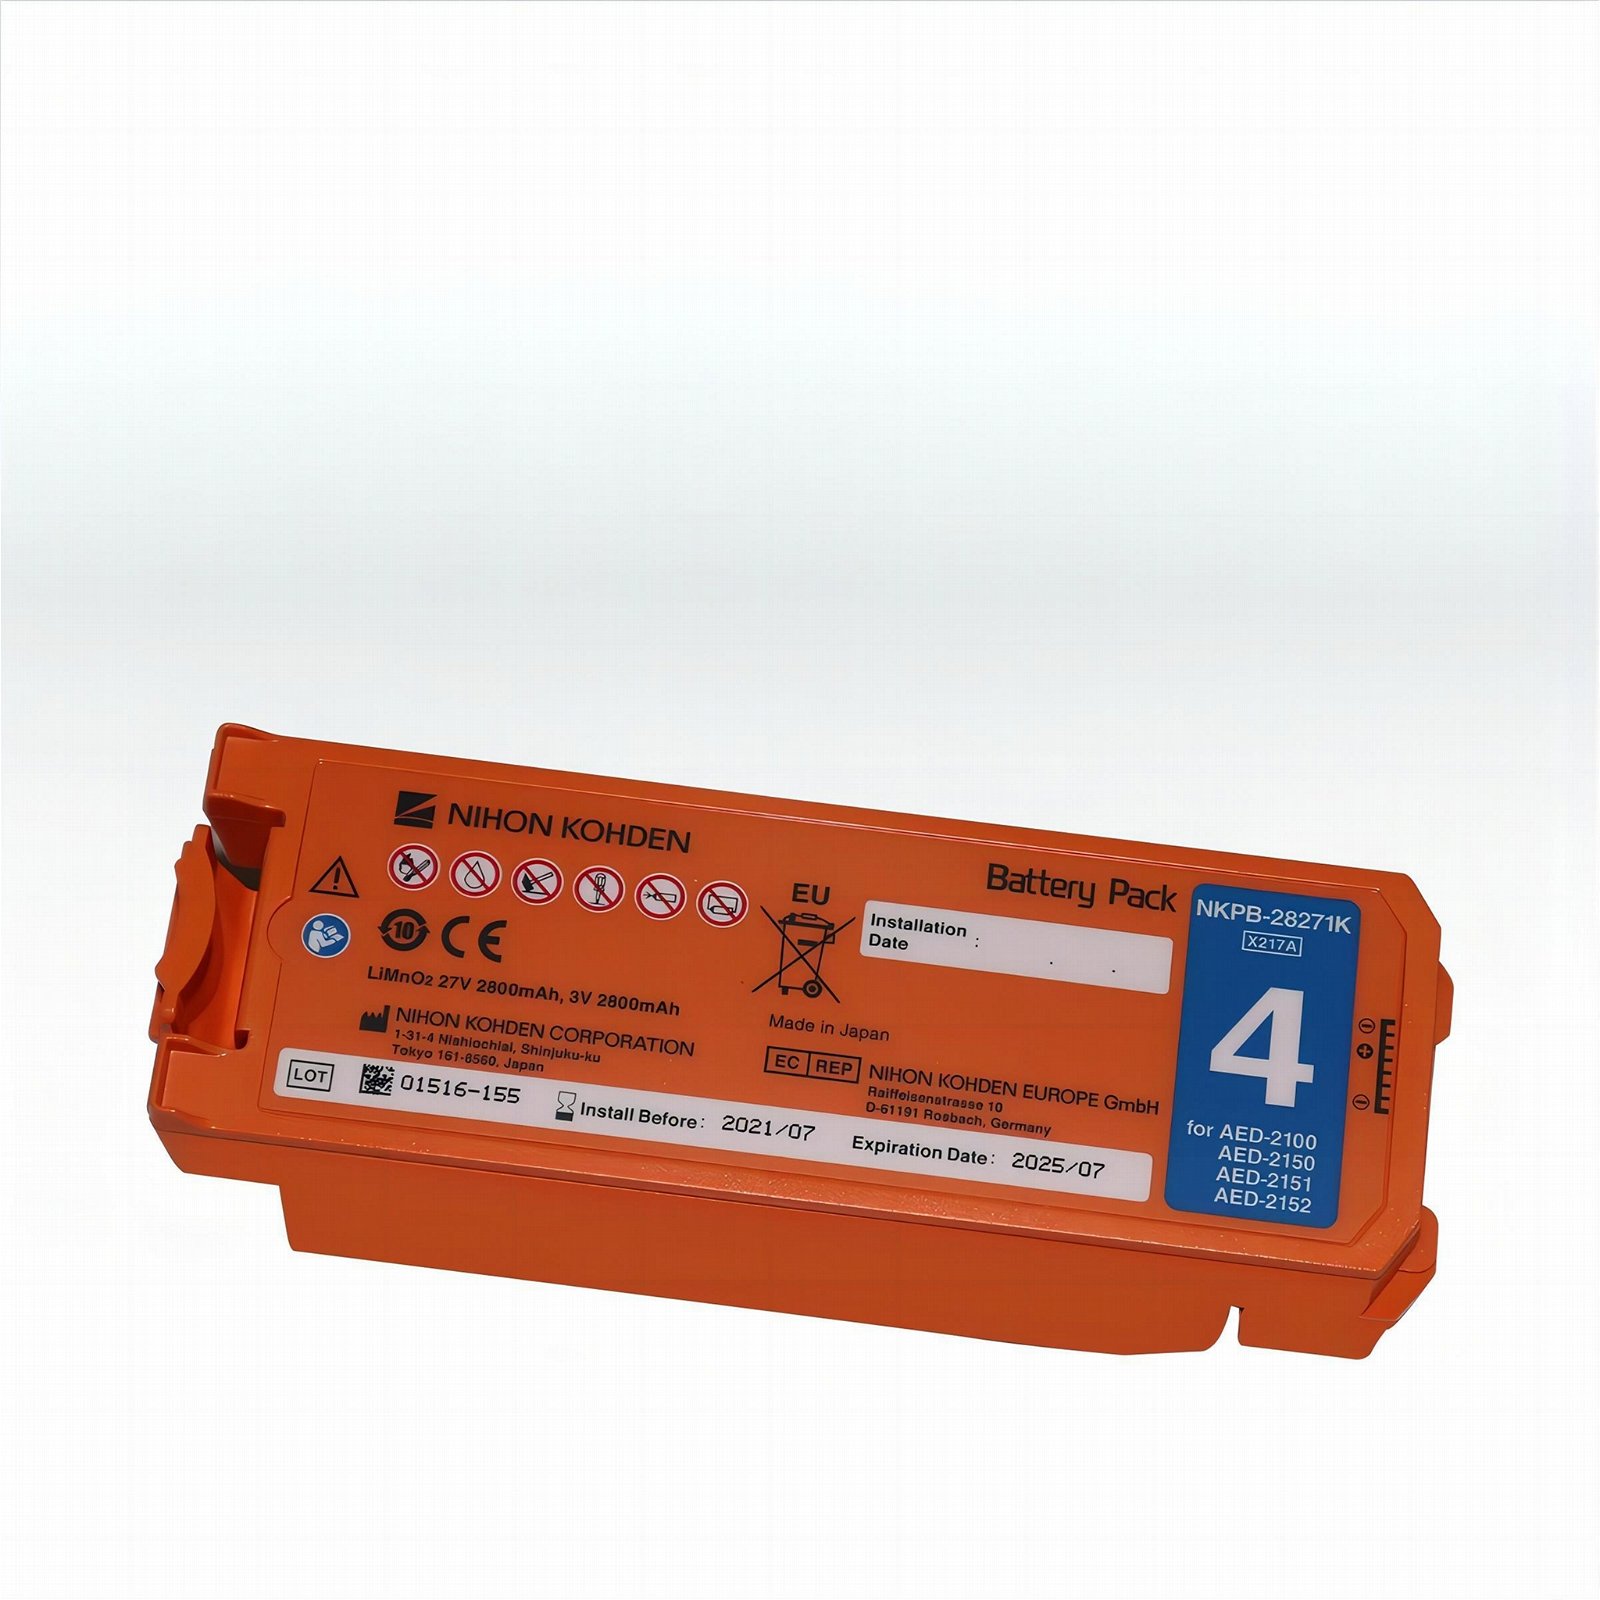 日本光电AED-2100/2150/2151/2152除颤仪电池NKPB-14301/28271K